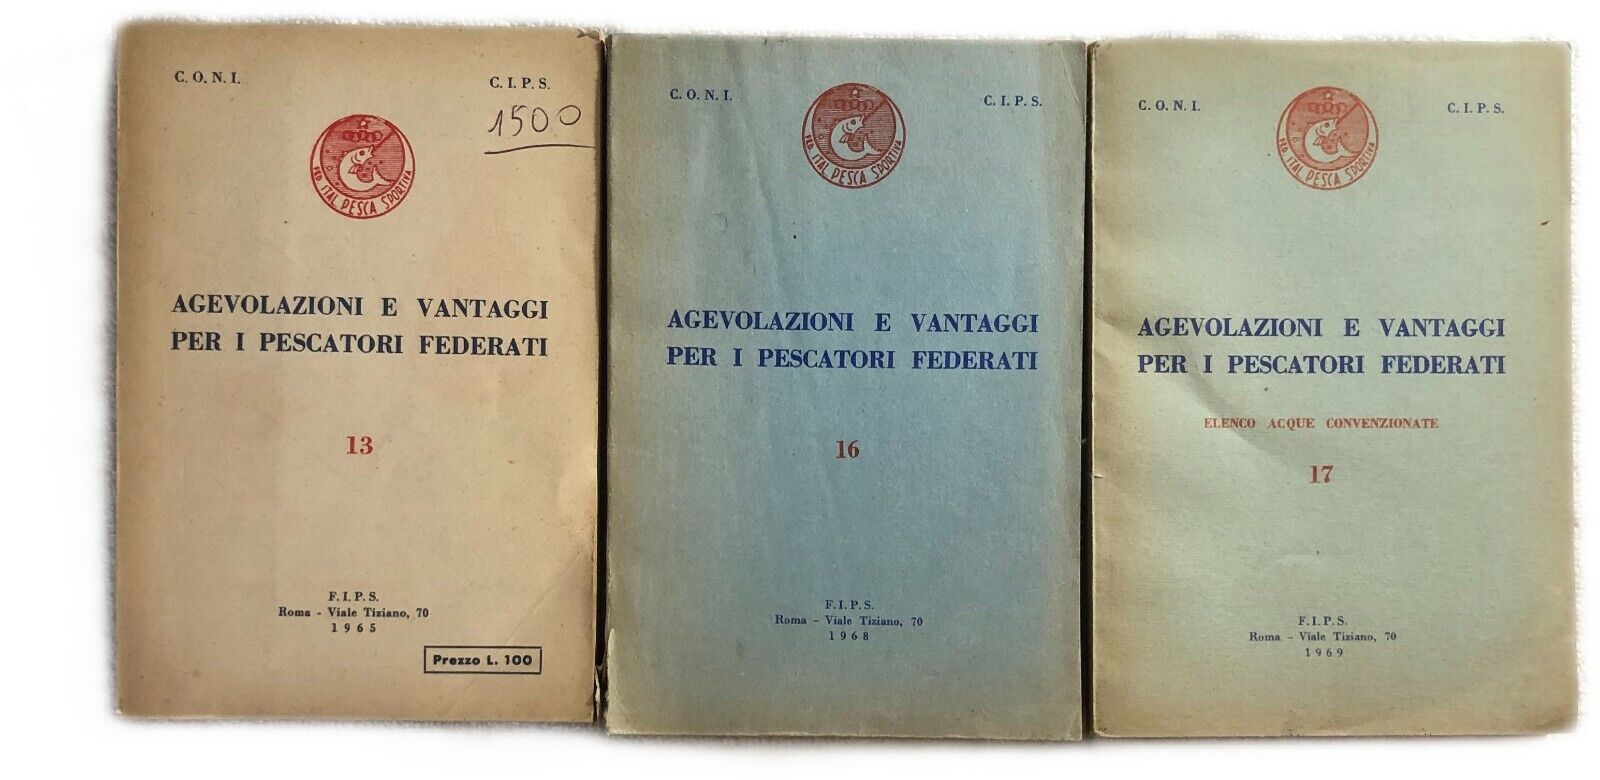 Agevolazioni e vantaggi per i pescatori federati 13-16-17 di Coni,  1965,  Fips